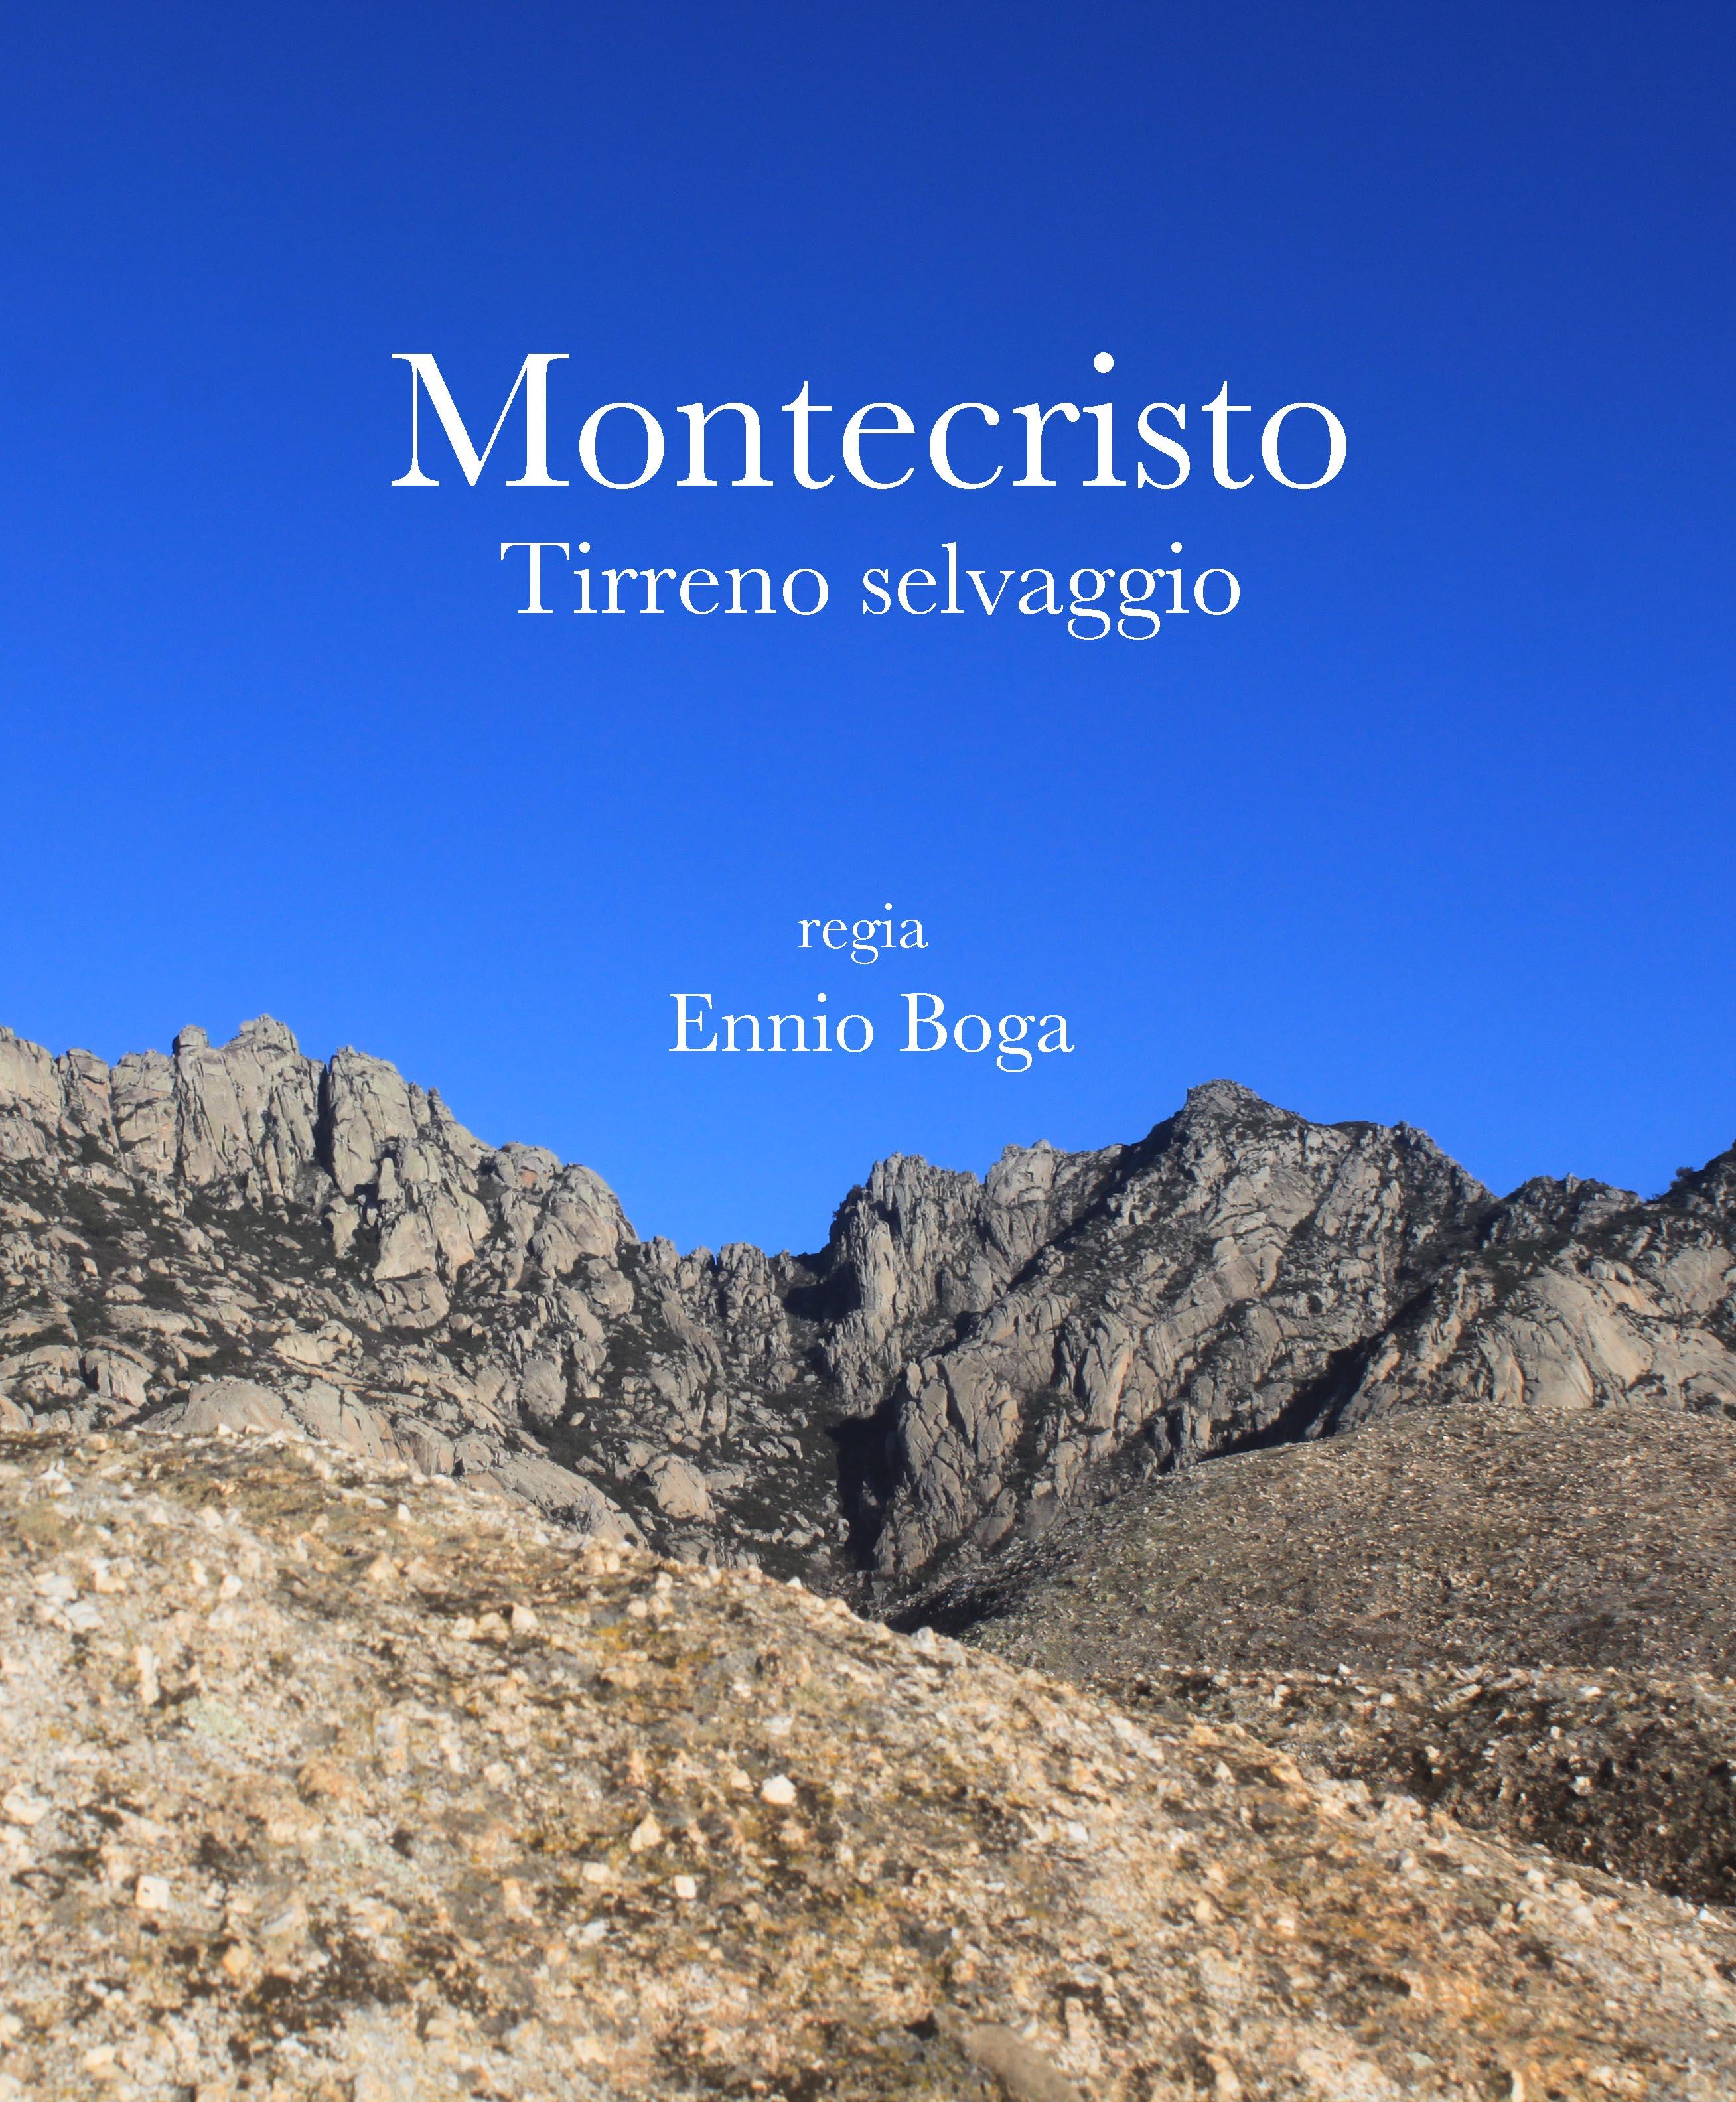 locandina di "Montecristo, Tirreno Selvaggio"